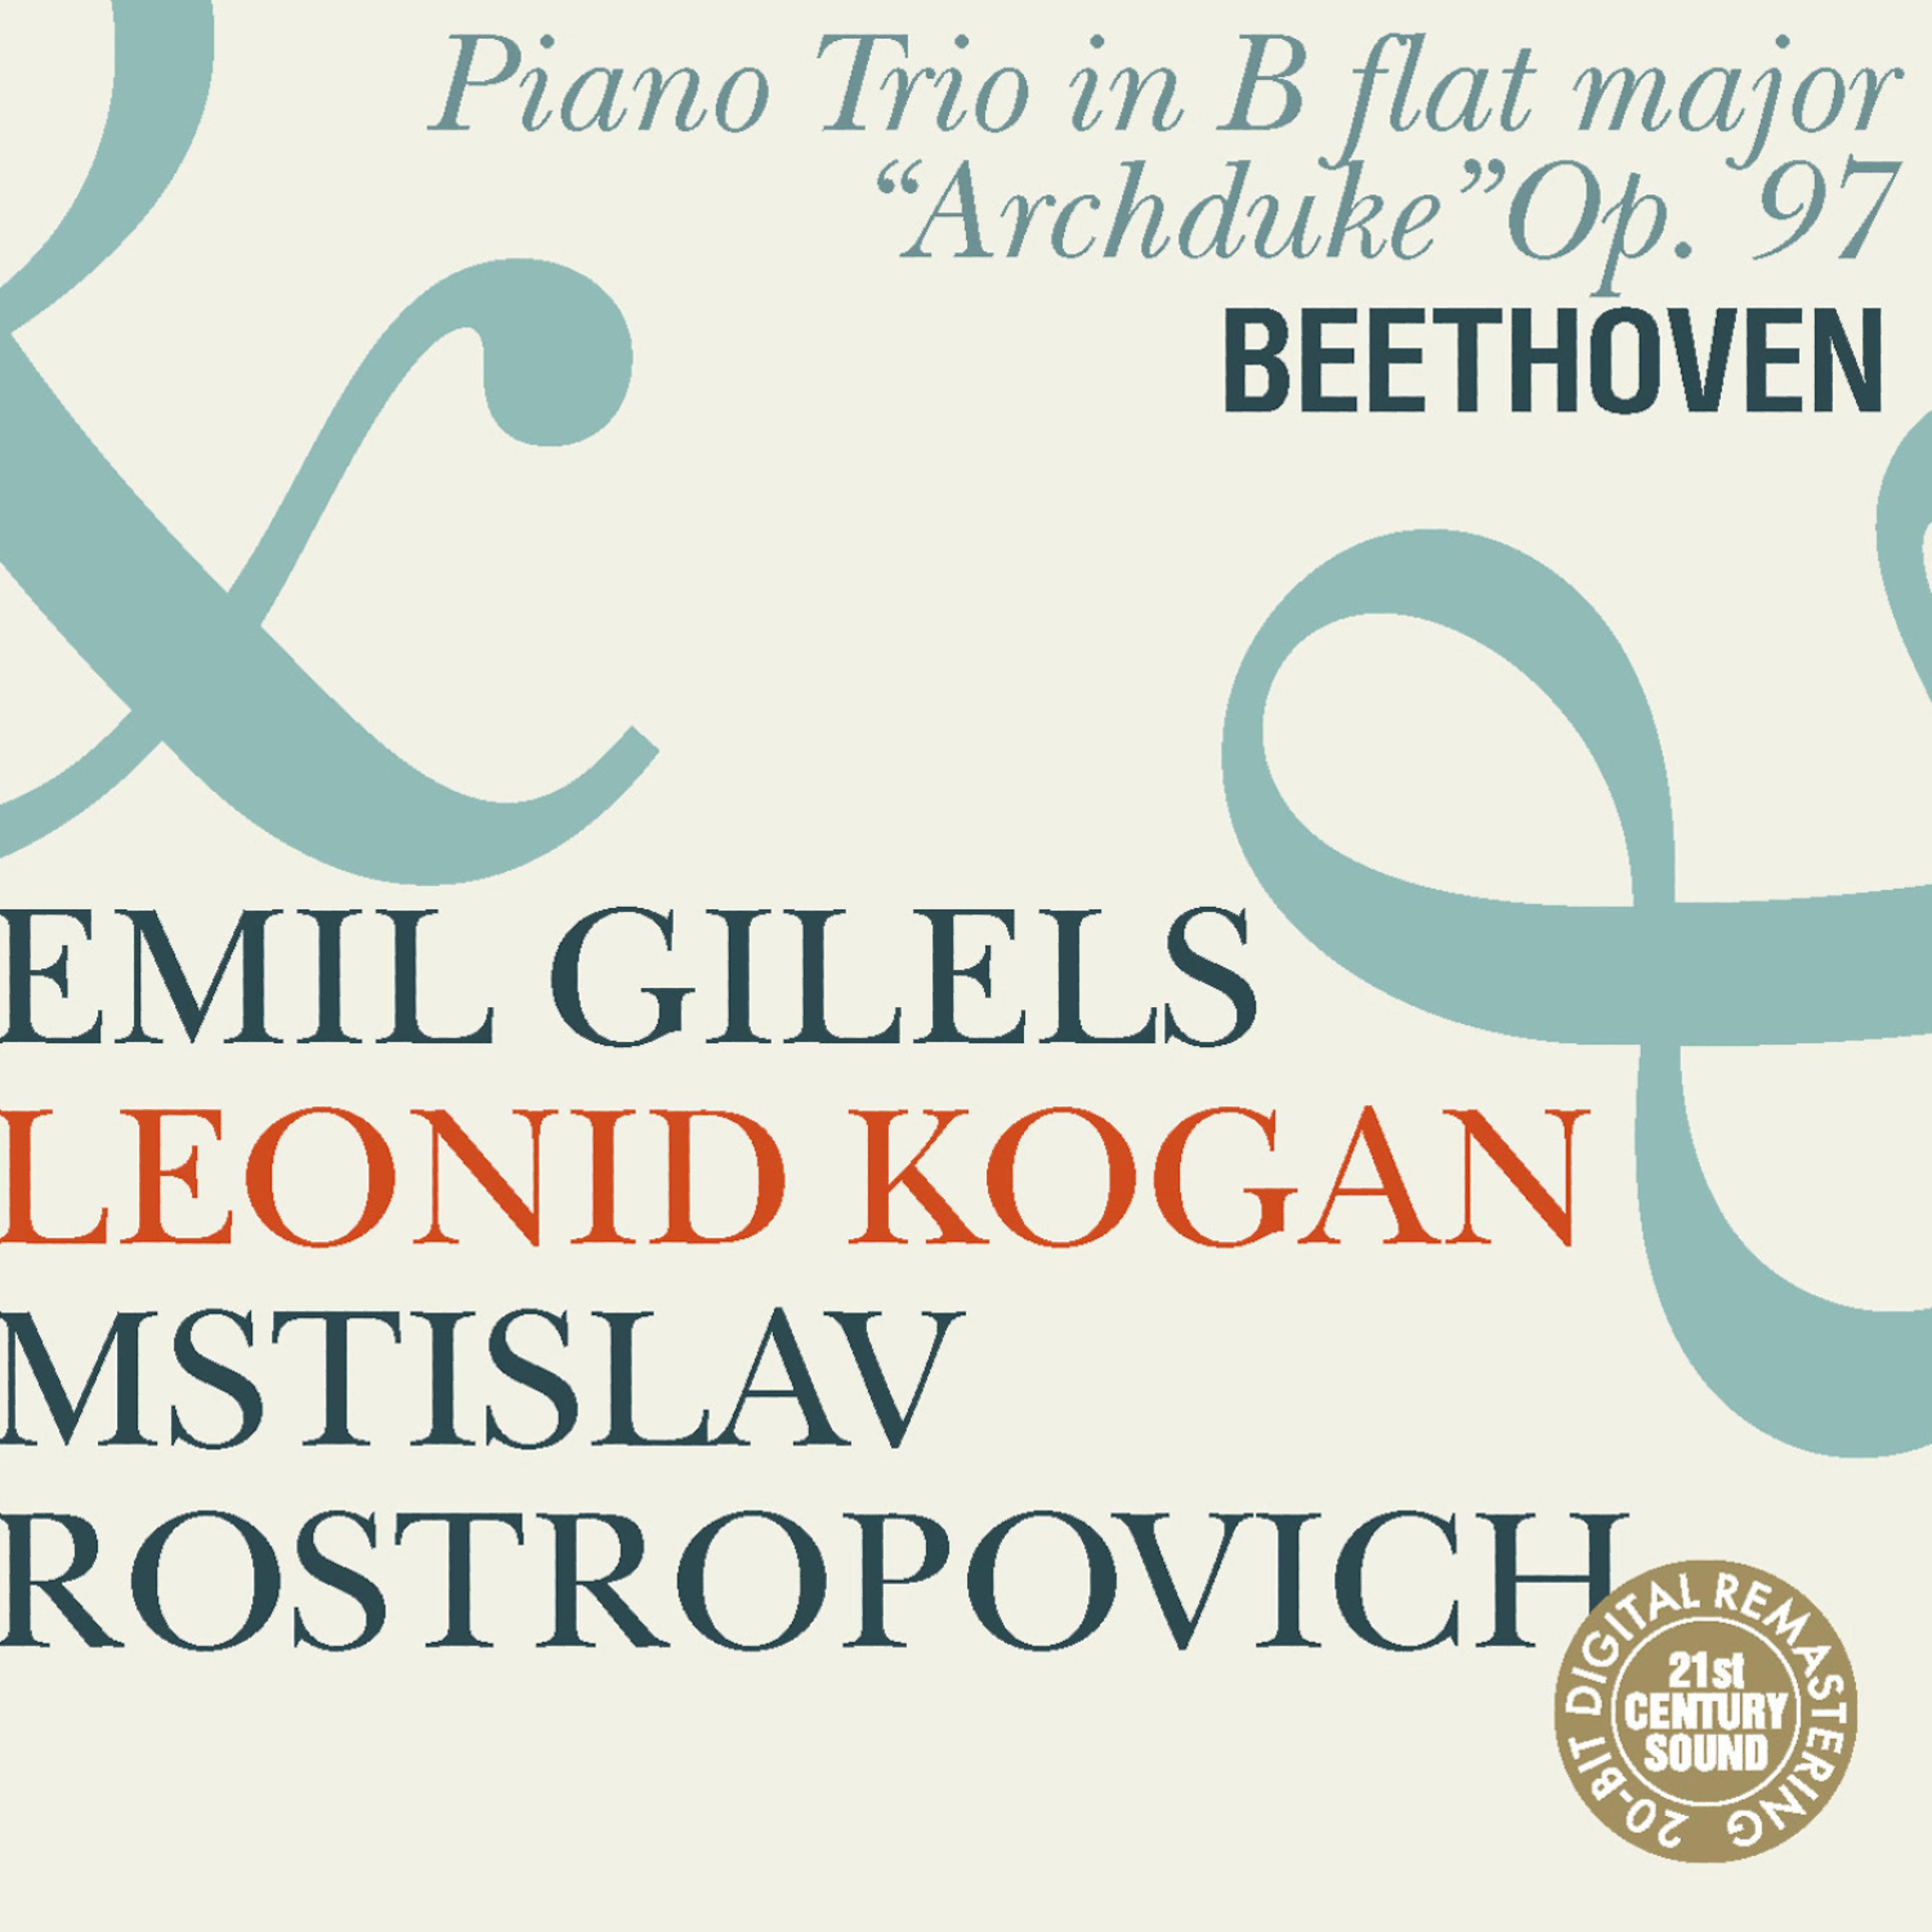 Постер альбома Beethoven: Piano Trio "Archduke"